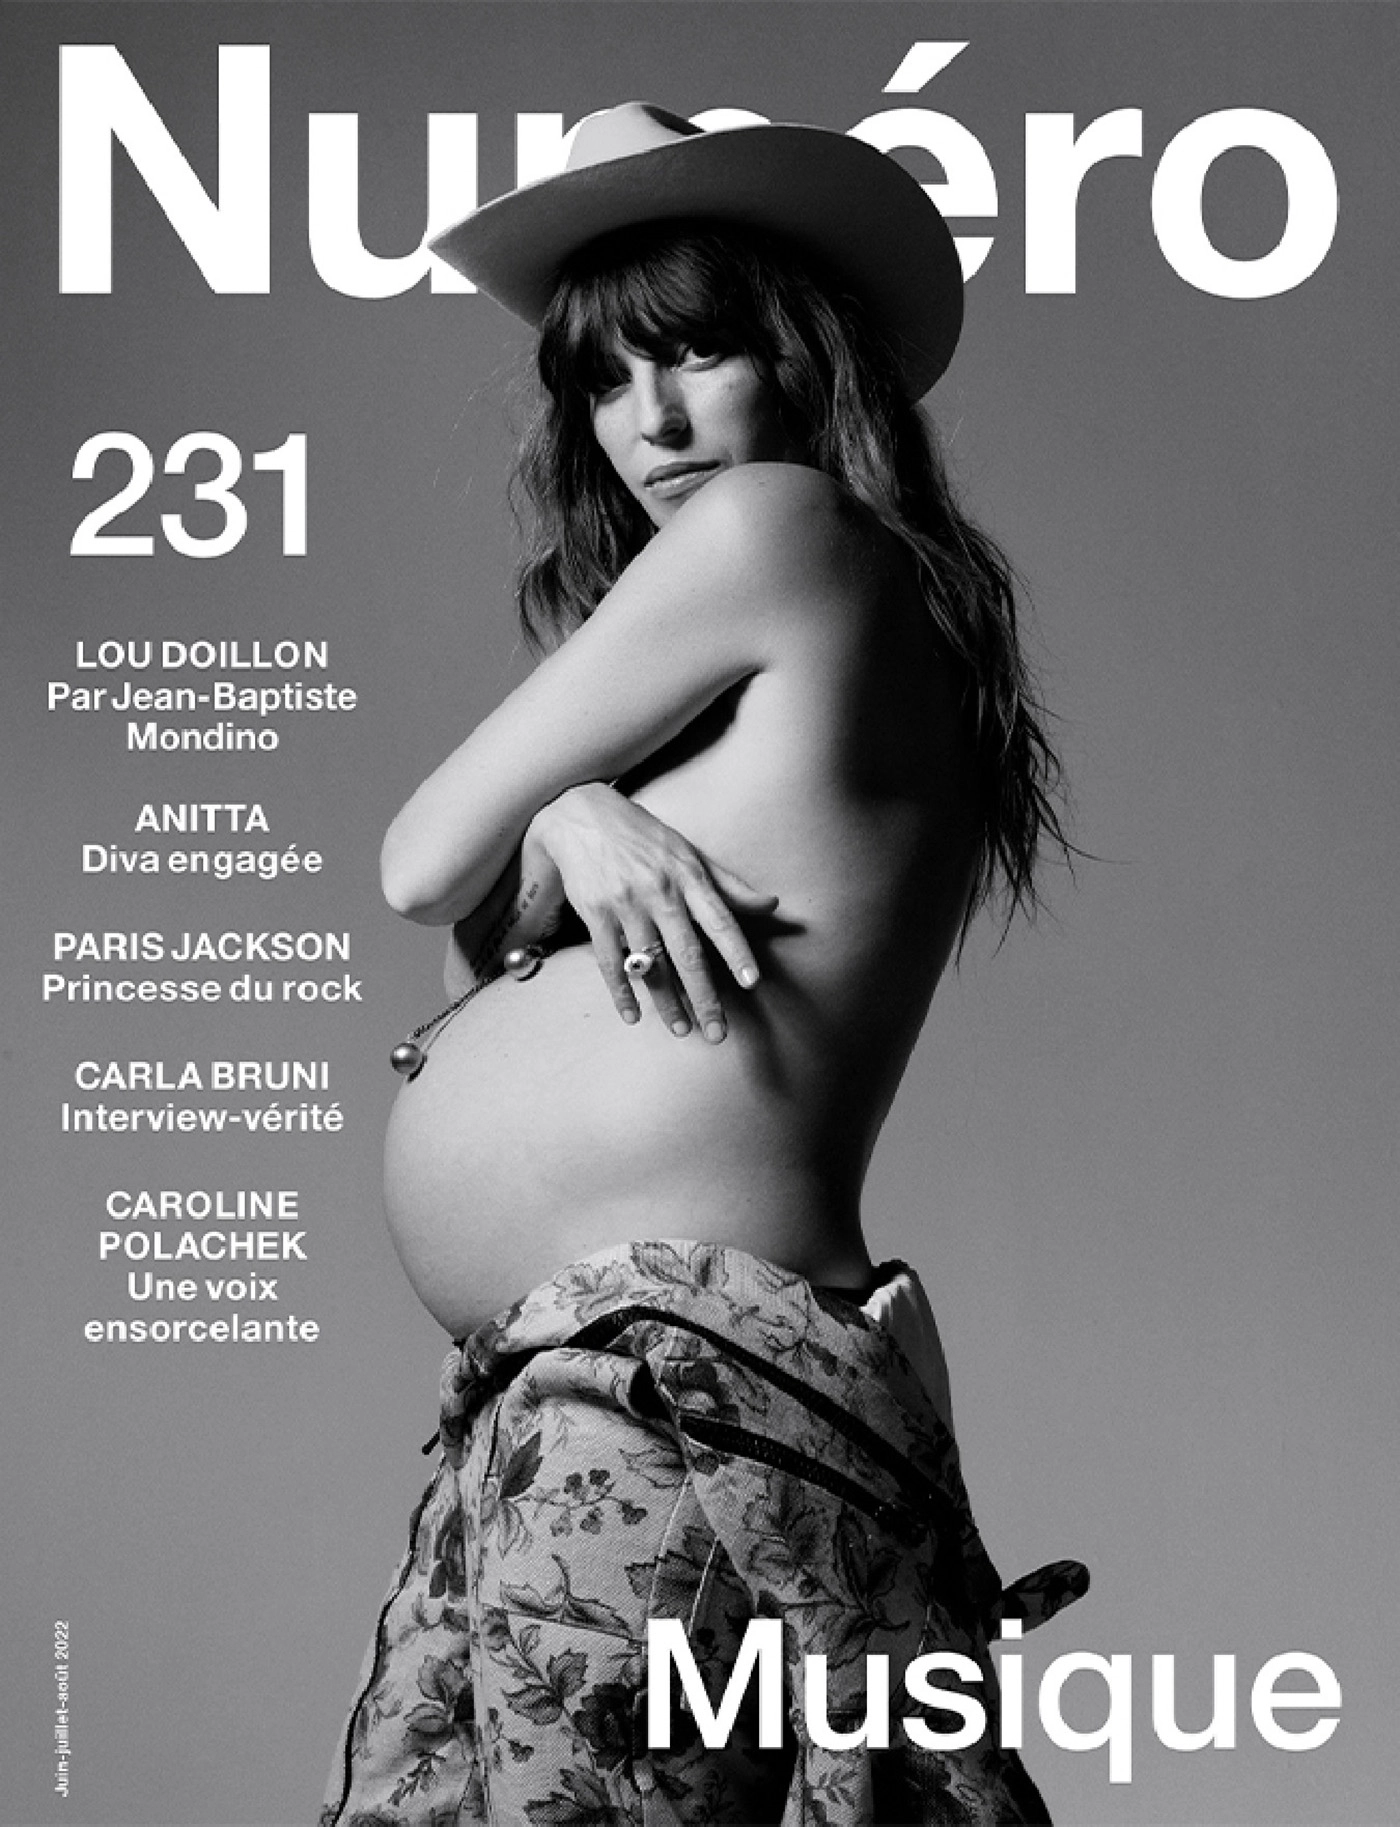 Lou Doillon covers Numéro June/July/August 2022 by Jean-Baptiste Mondino